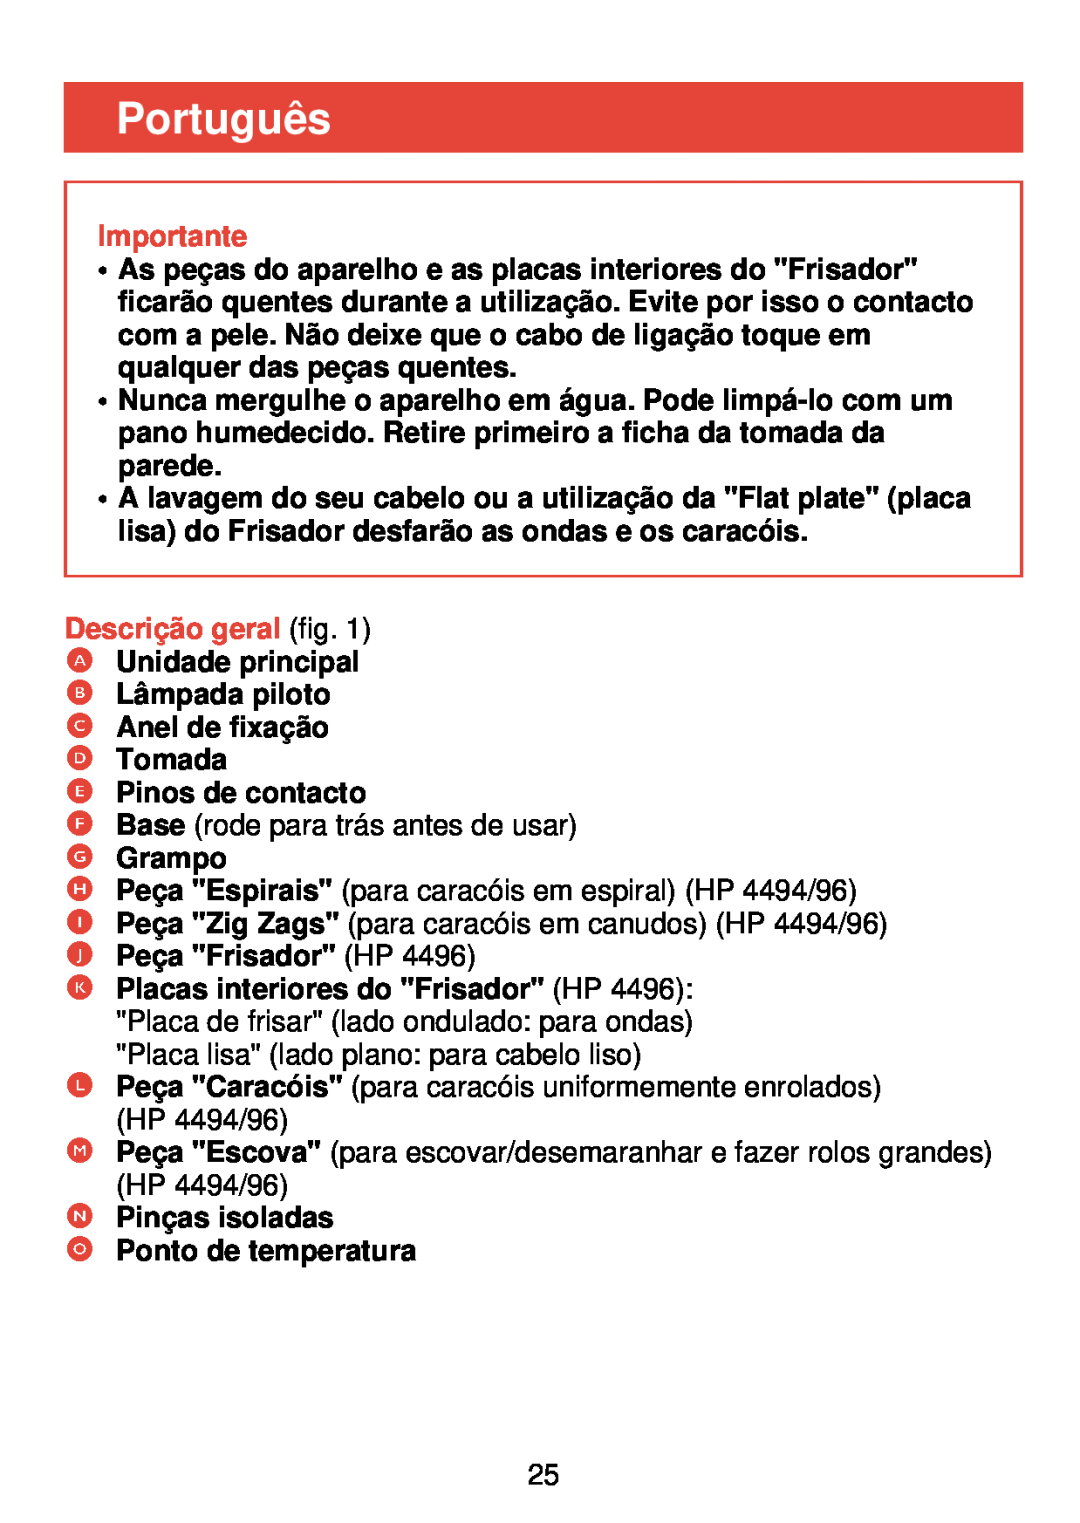 Philips HP 4490, HP 4494, HP 4496 manual Português, Descrição geral fig, Importante 